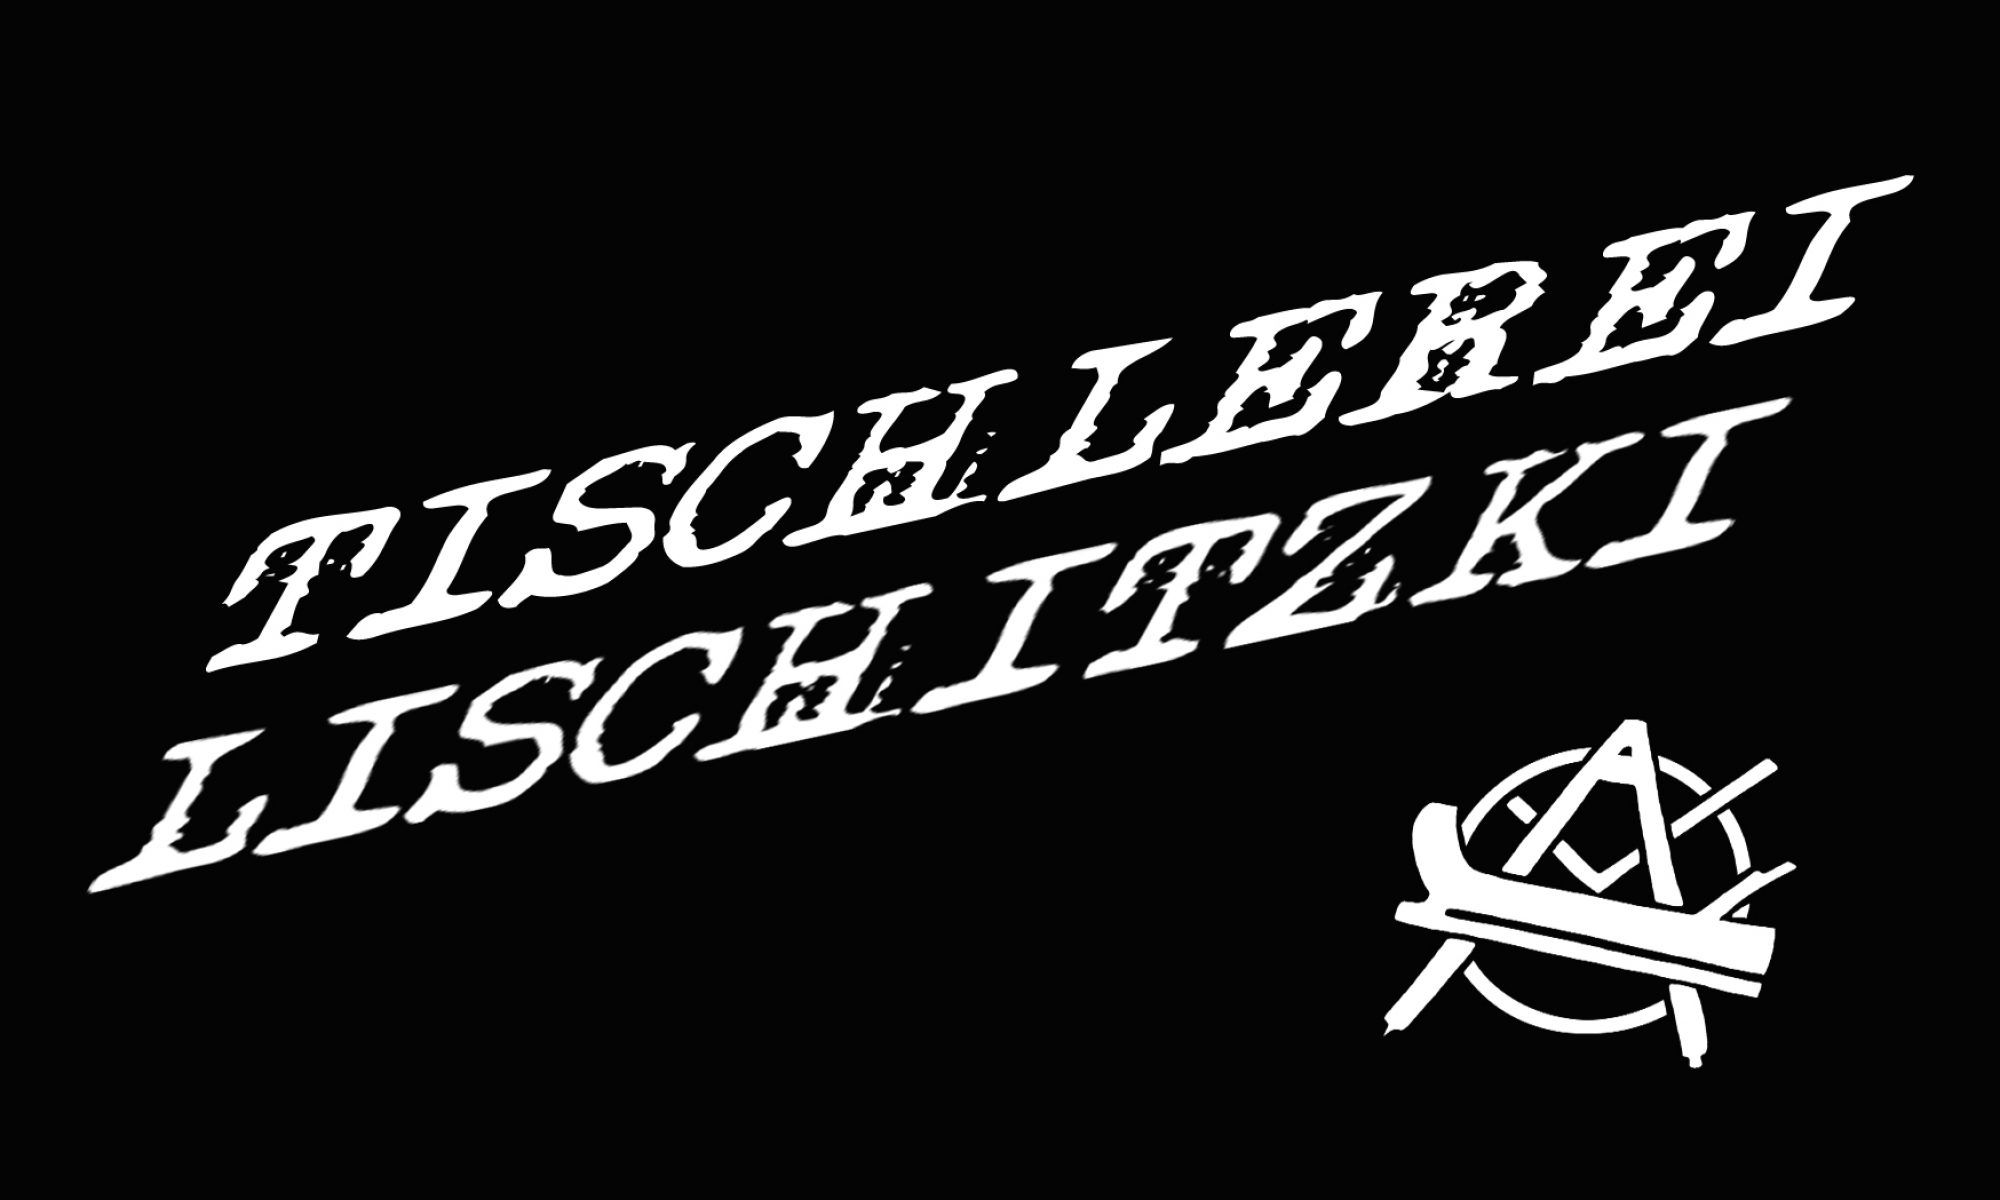 Tischlerei Lischitzki